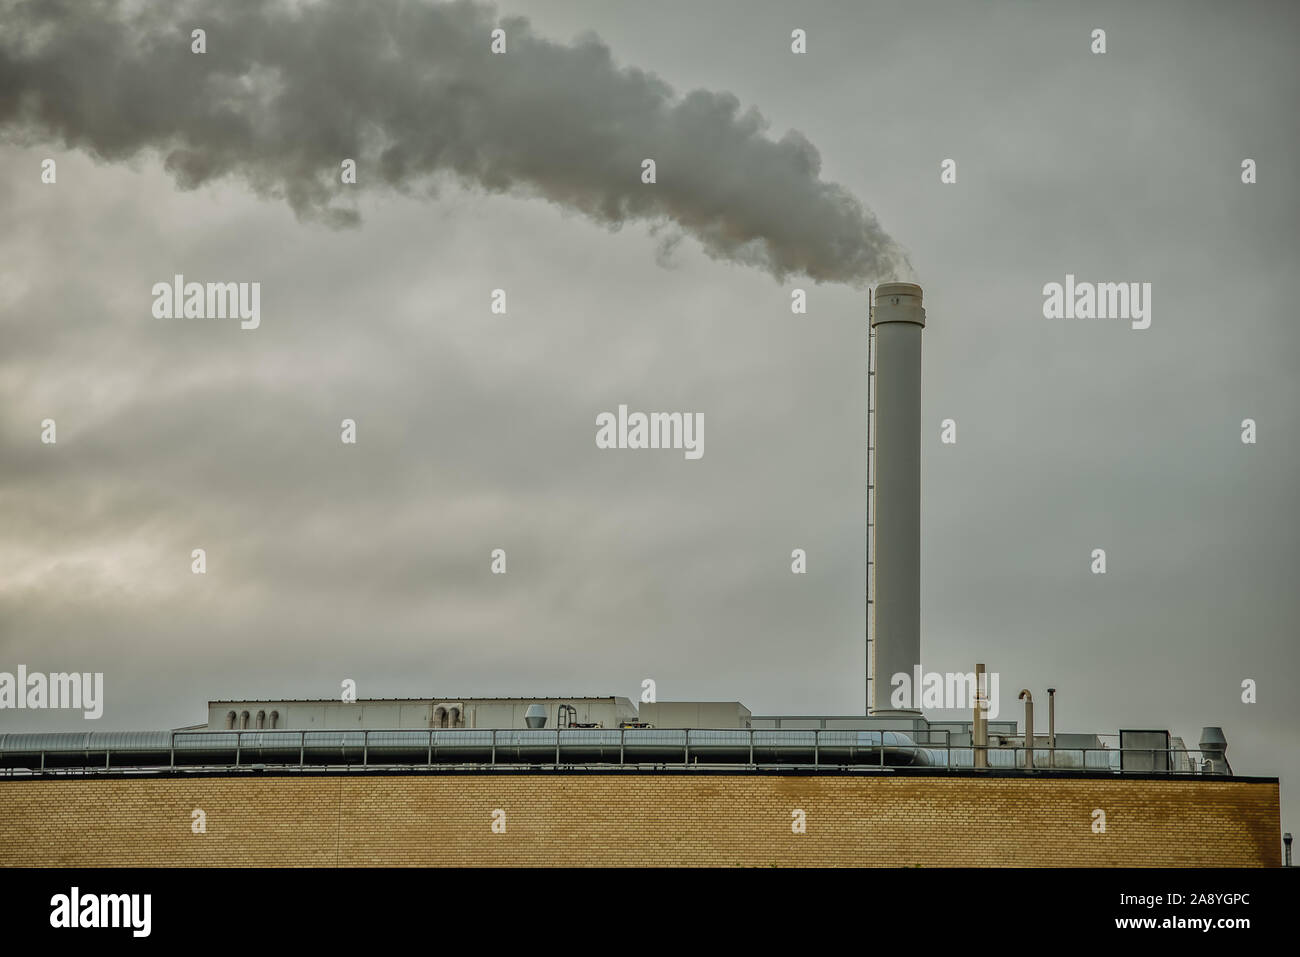 Fumo nero su un cielo grigio, venendo da una grande ciminiera sulla sommità di una fabbrica. Danimarca, 10 novembre 2019 Foto Stock